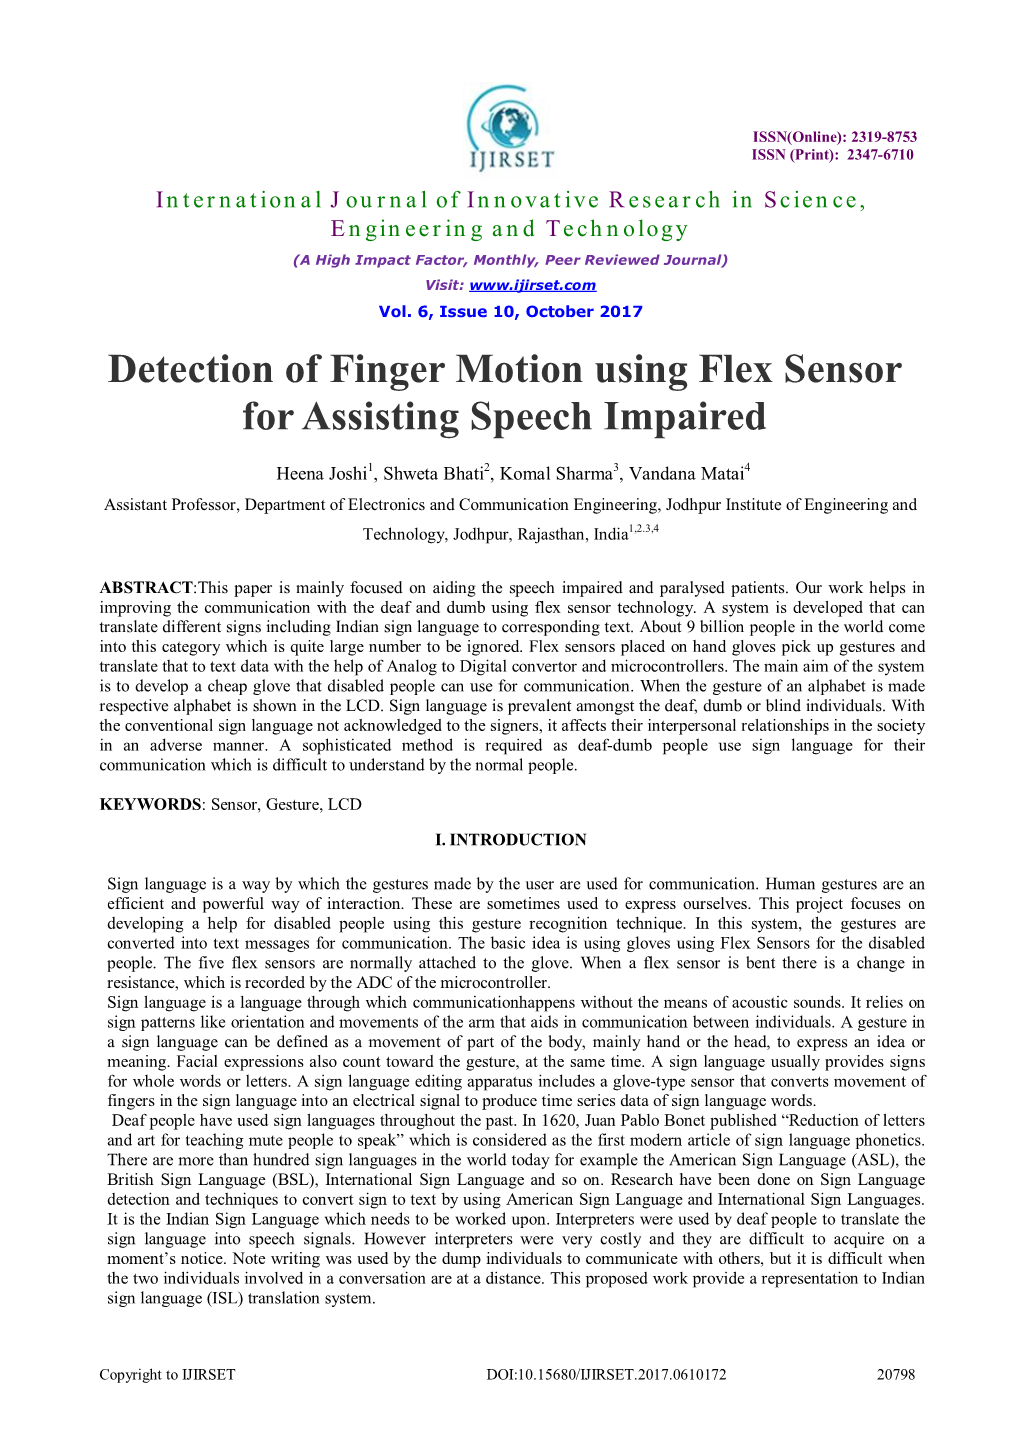 Detection of Finger Motion Using Flex Sensor for Assisting Speech Impaired